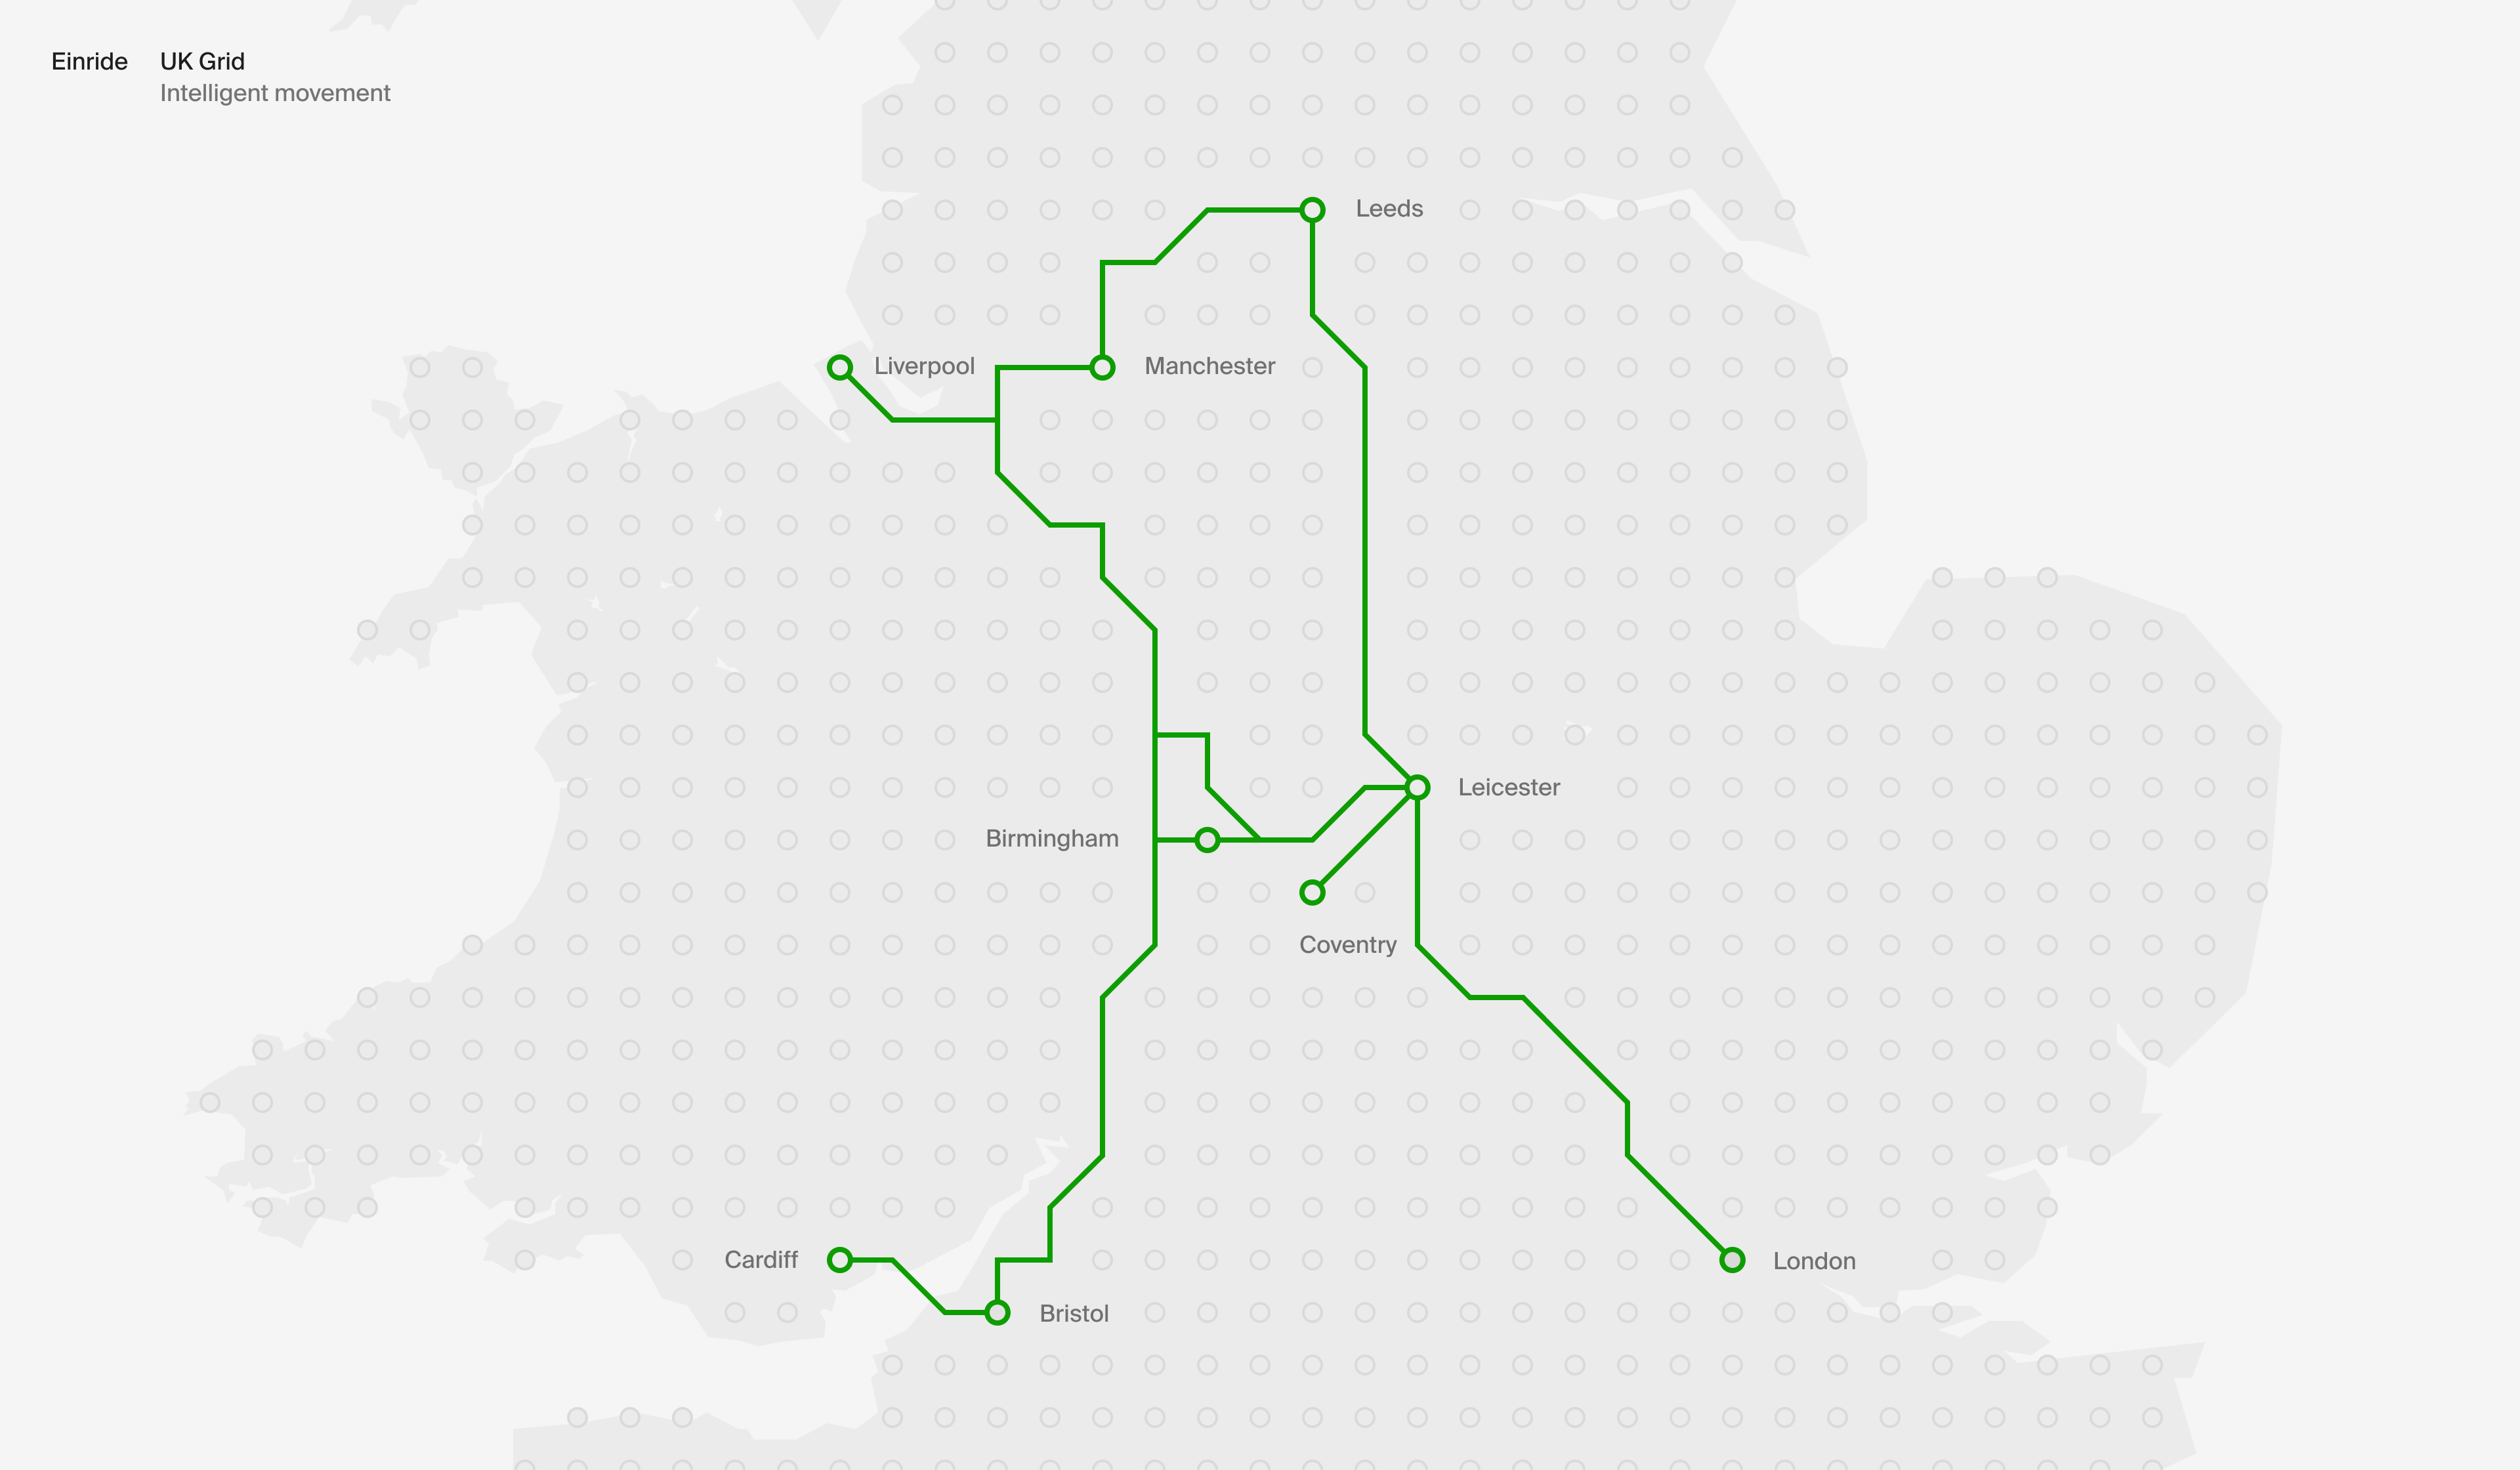 Einride's planned transport network